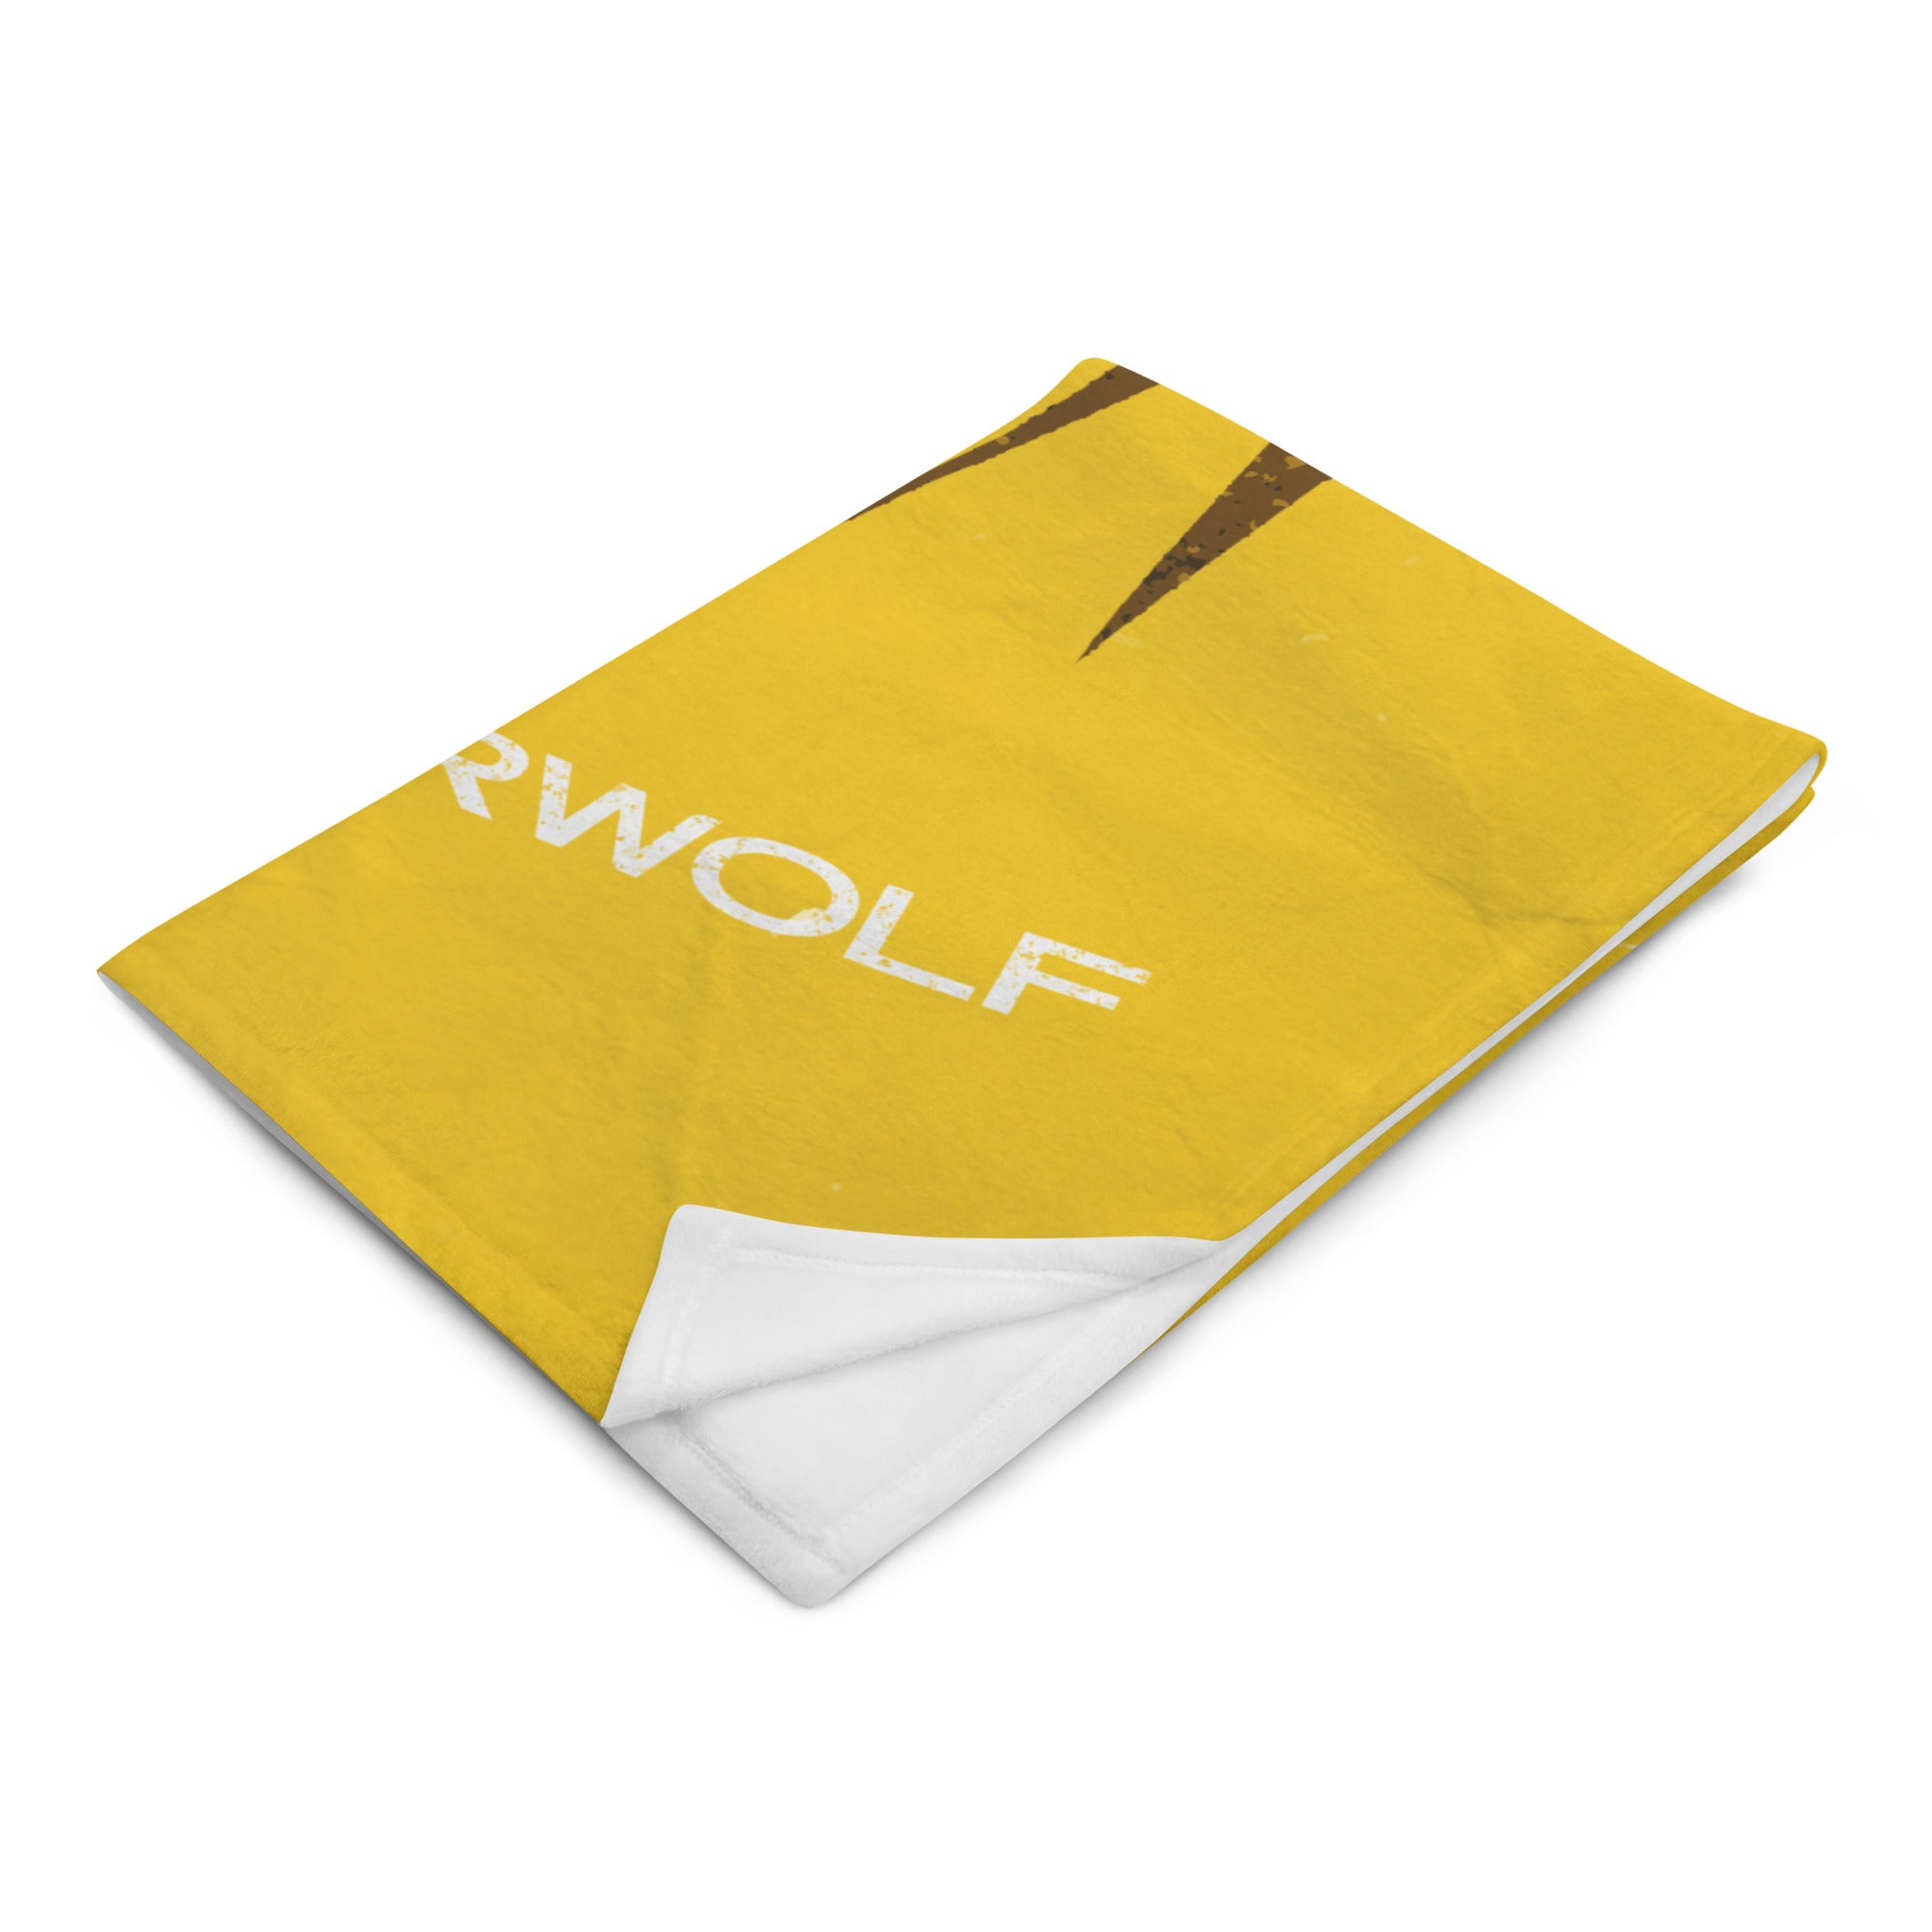 Earwolf Presents: Yellow Throw Blanket